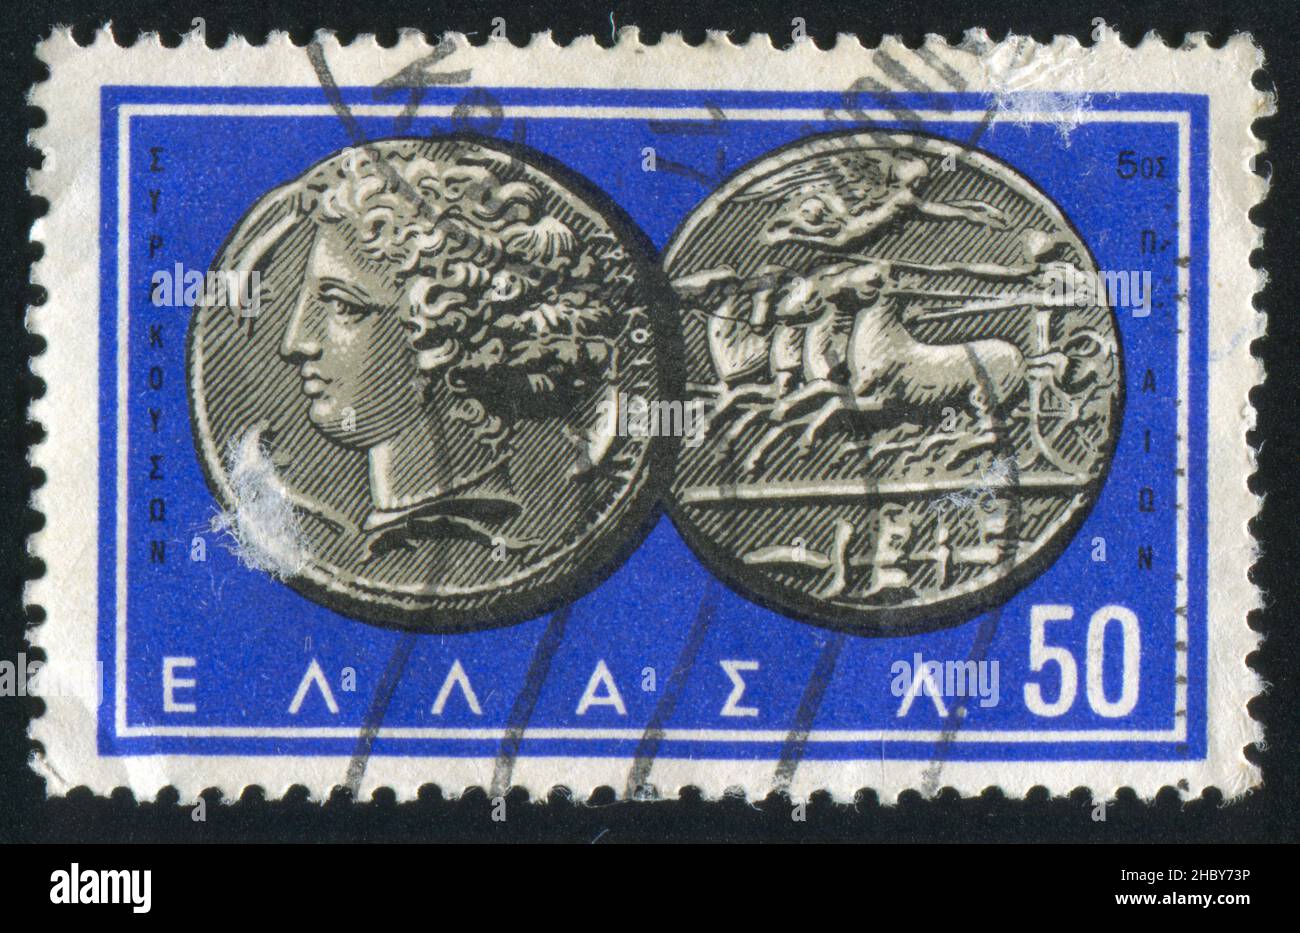 GRÈCE - VERS 1959: Timbre imprimé par la Grèce, montre la pièce de monnaie Nymph Arethusa-Chariot, vers 1959 Banque D'Images